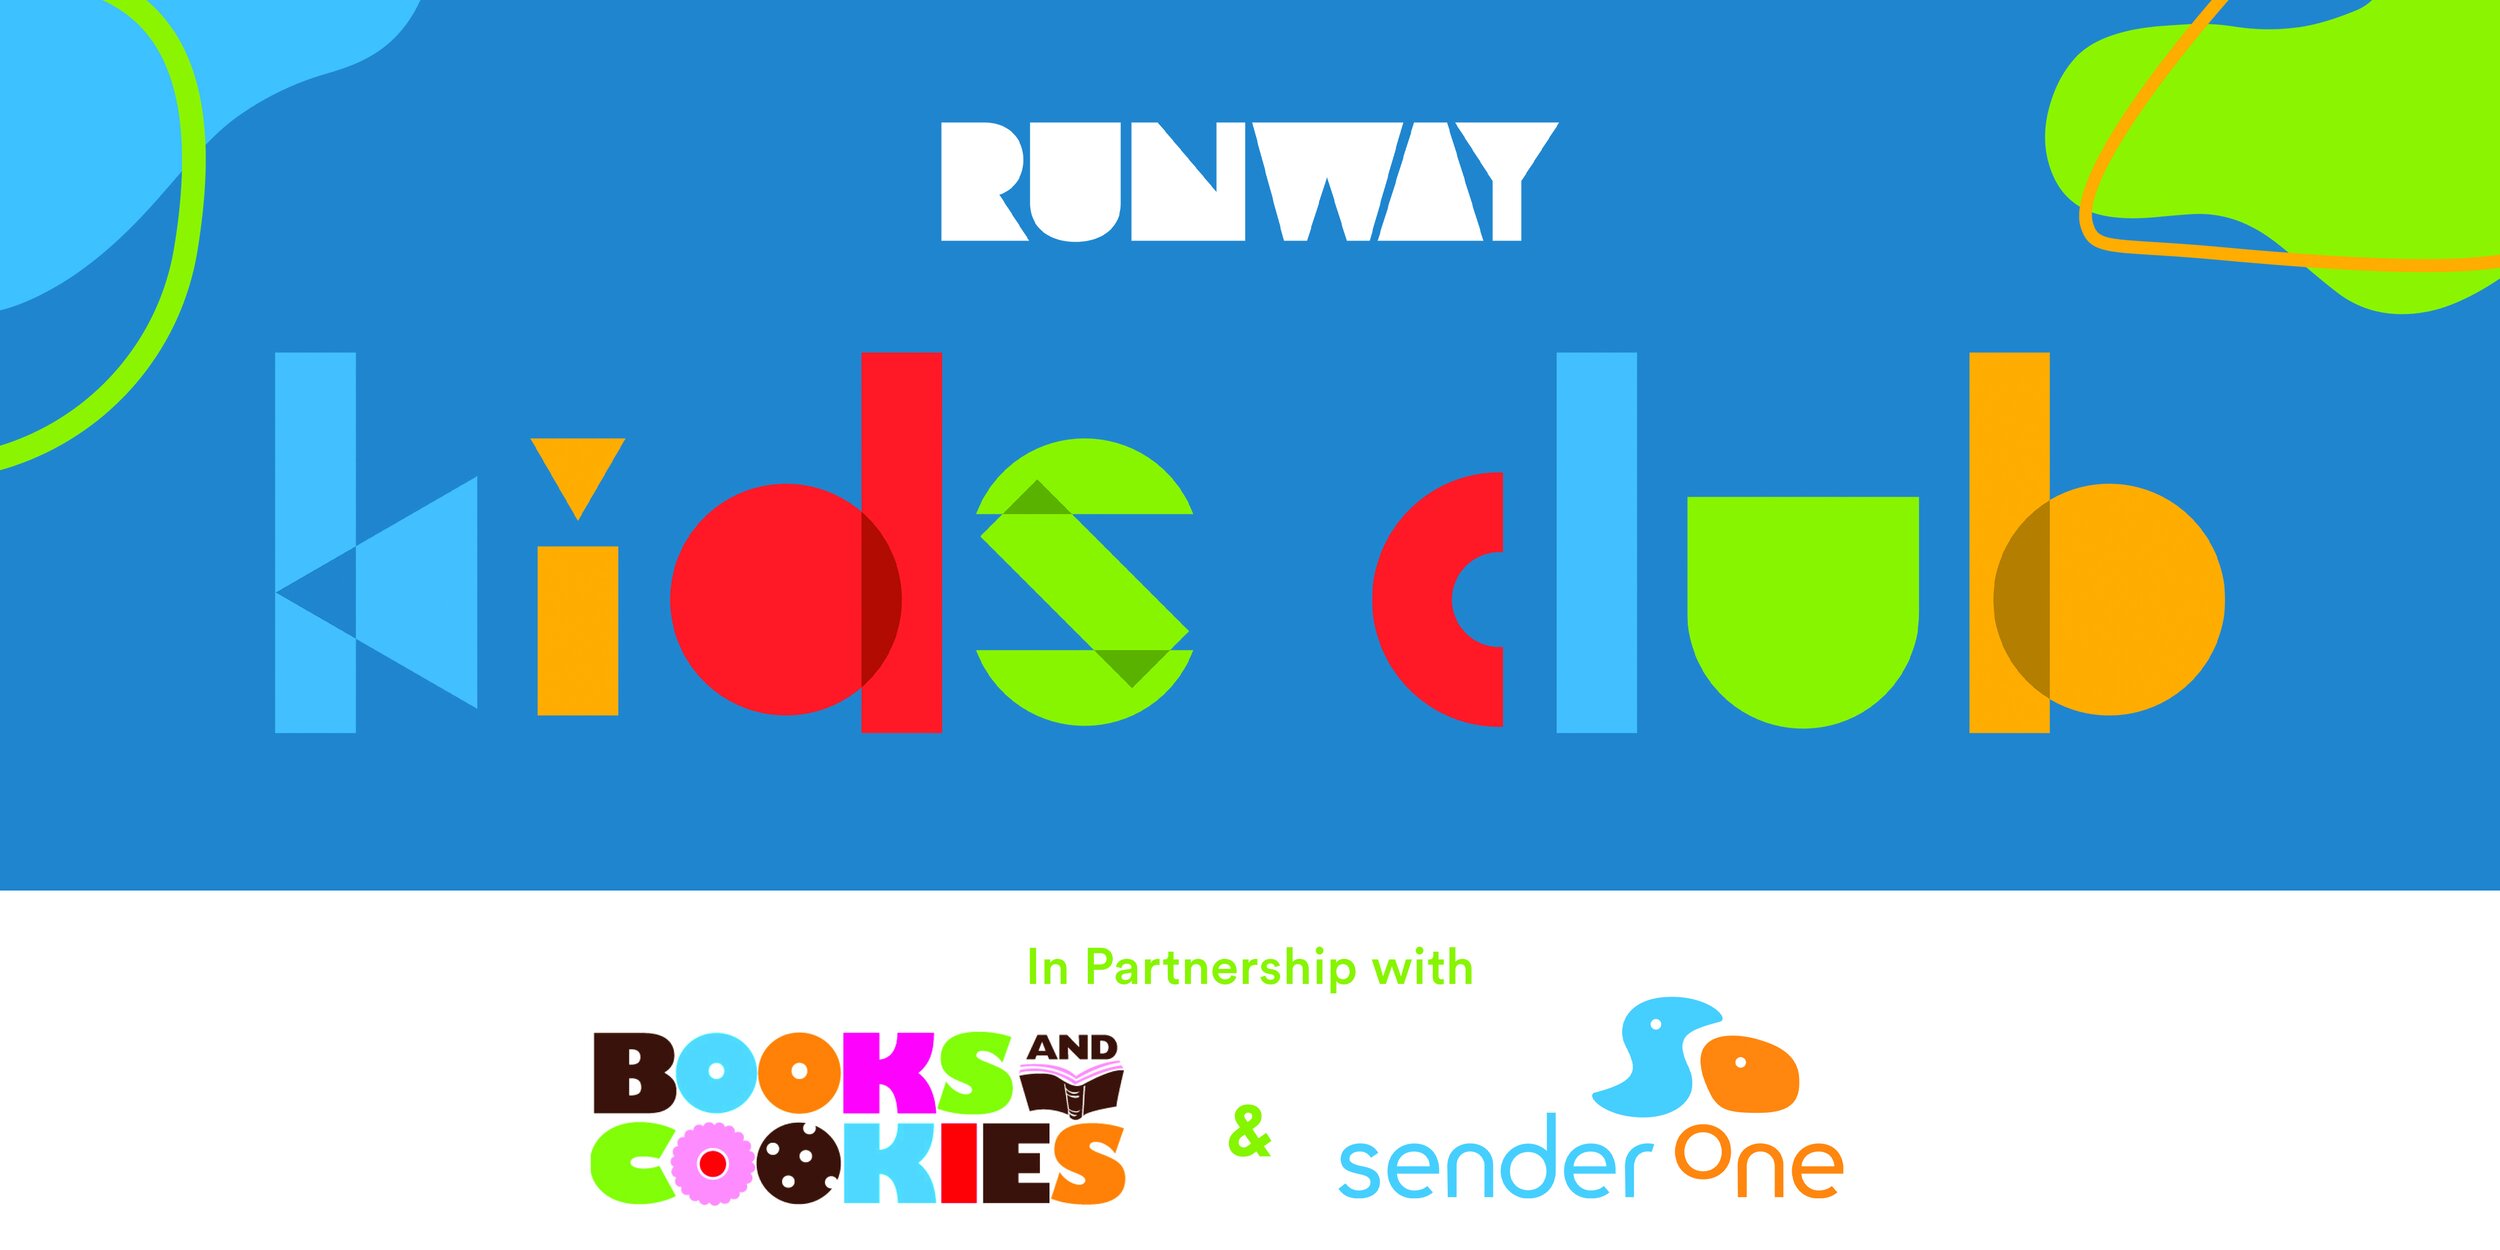 RUNWAY Kids Club: Books and Cookies — RUNWAY